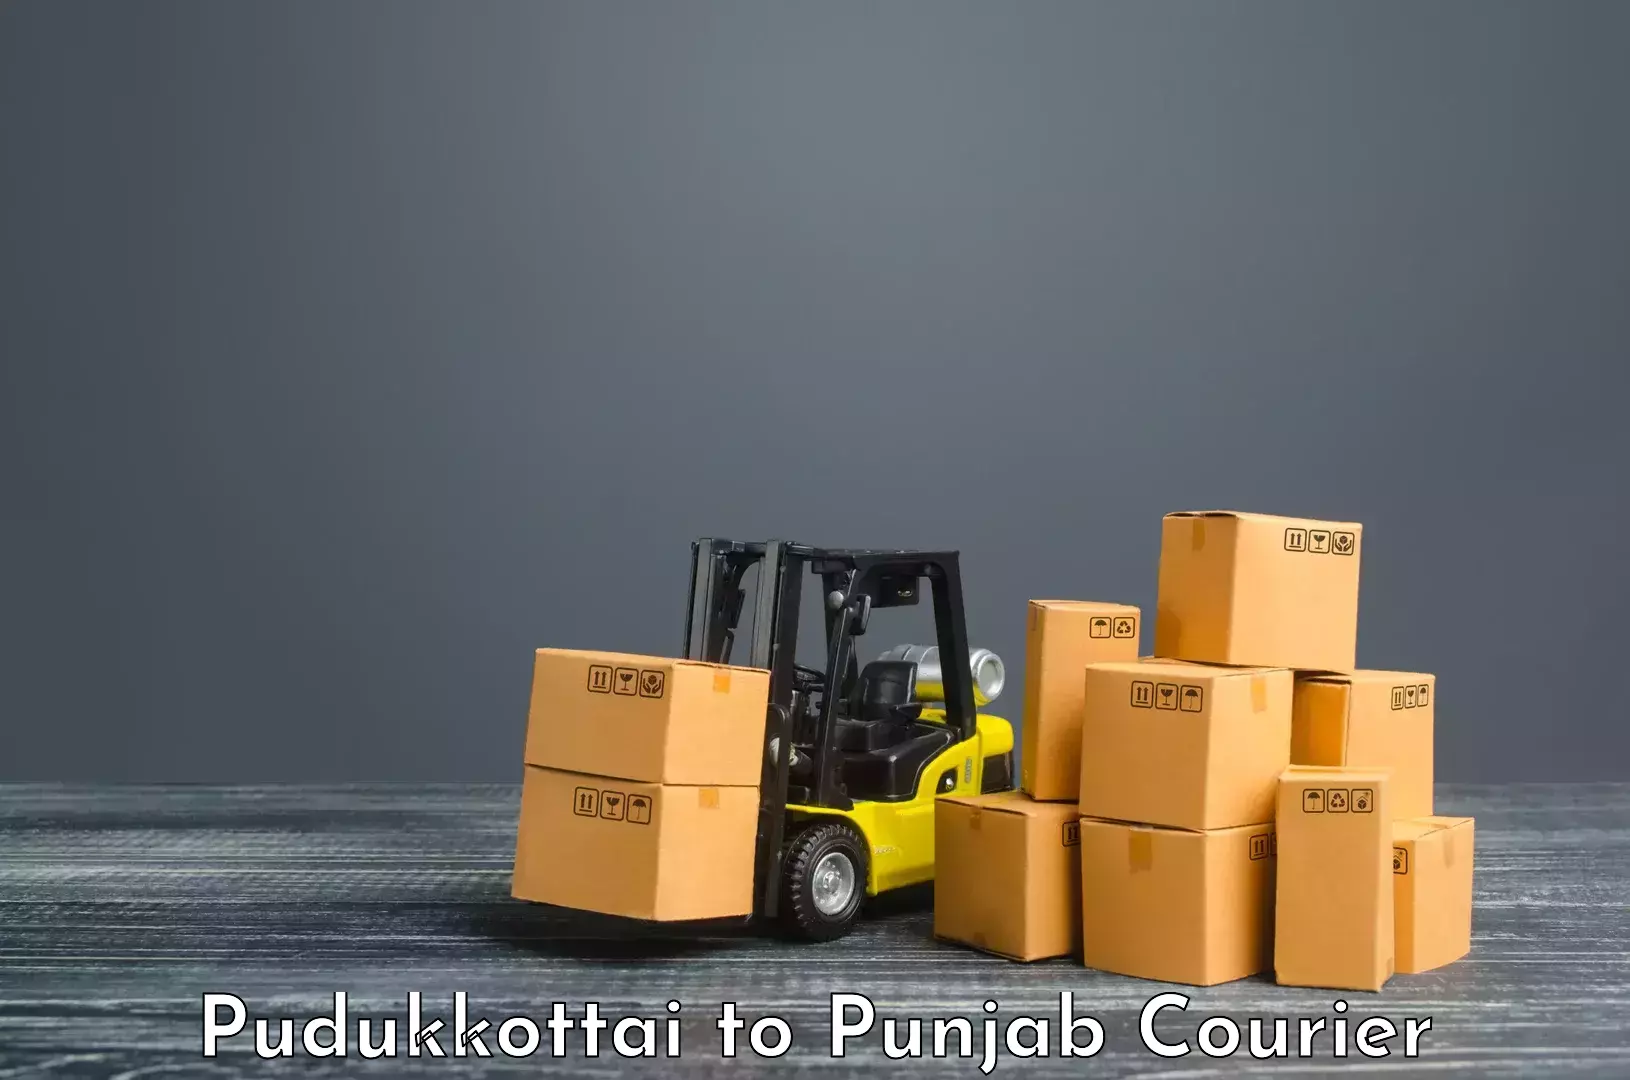 Premium courier services Pudukkottai to Patiala